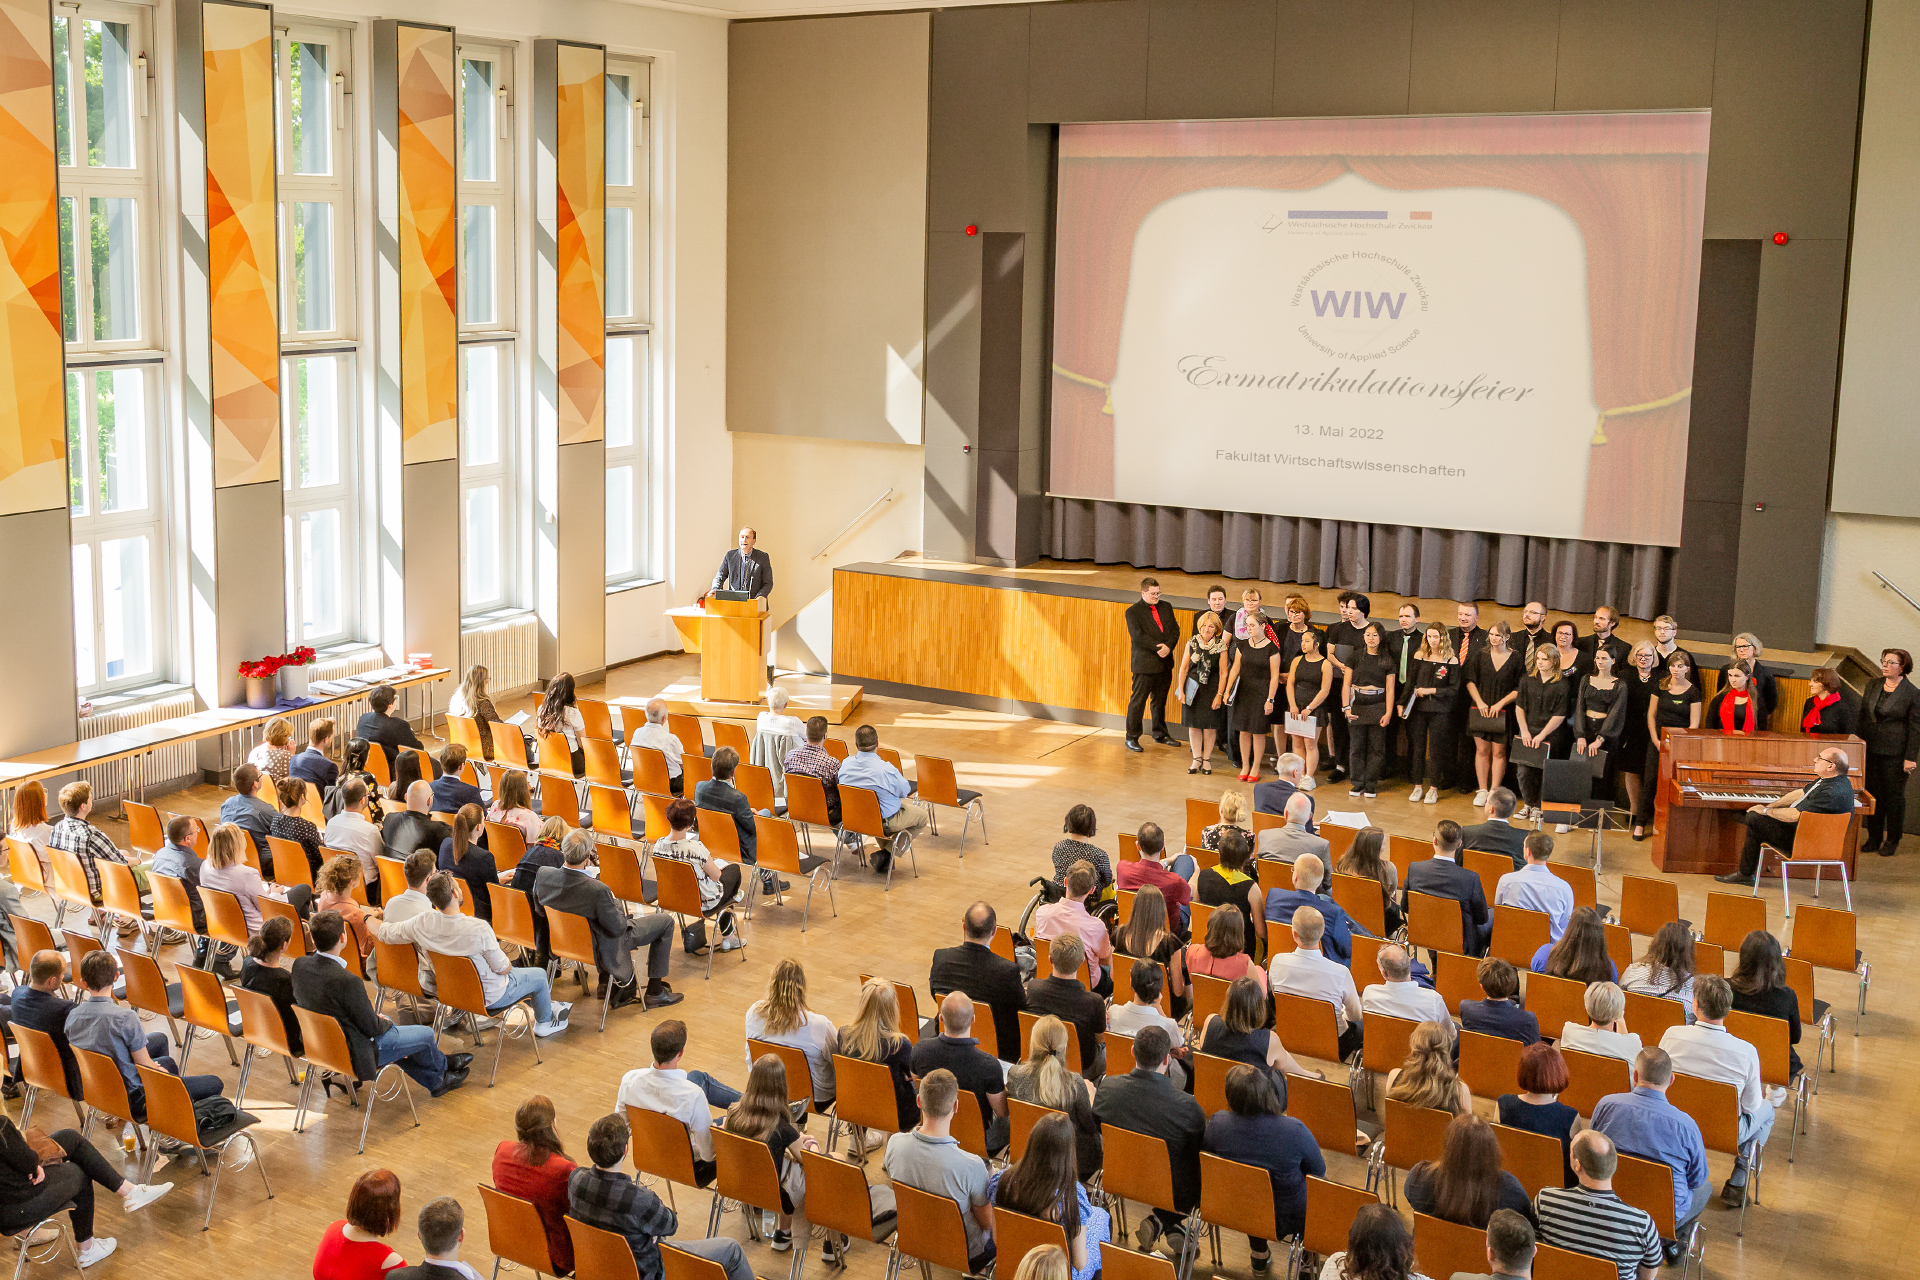 Foto: Exmatrikulationsfeier Fakultät WIW in der Aula Campus Scheffelberg, Absolventen vor der Bühne, im Publikum Angehörige